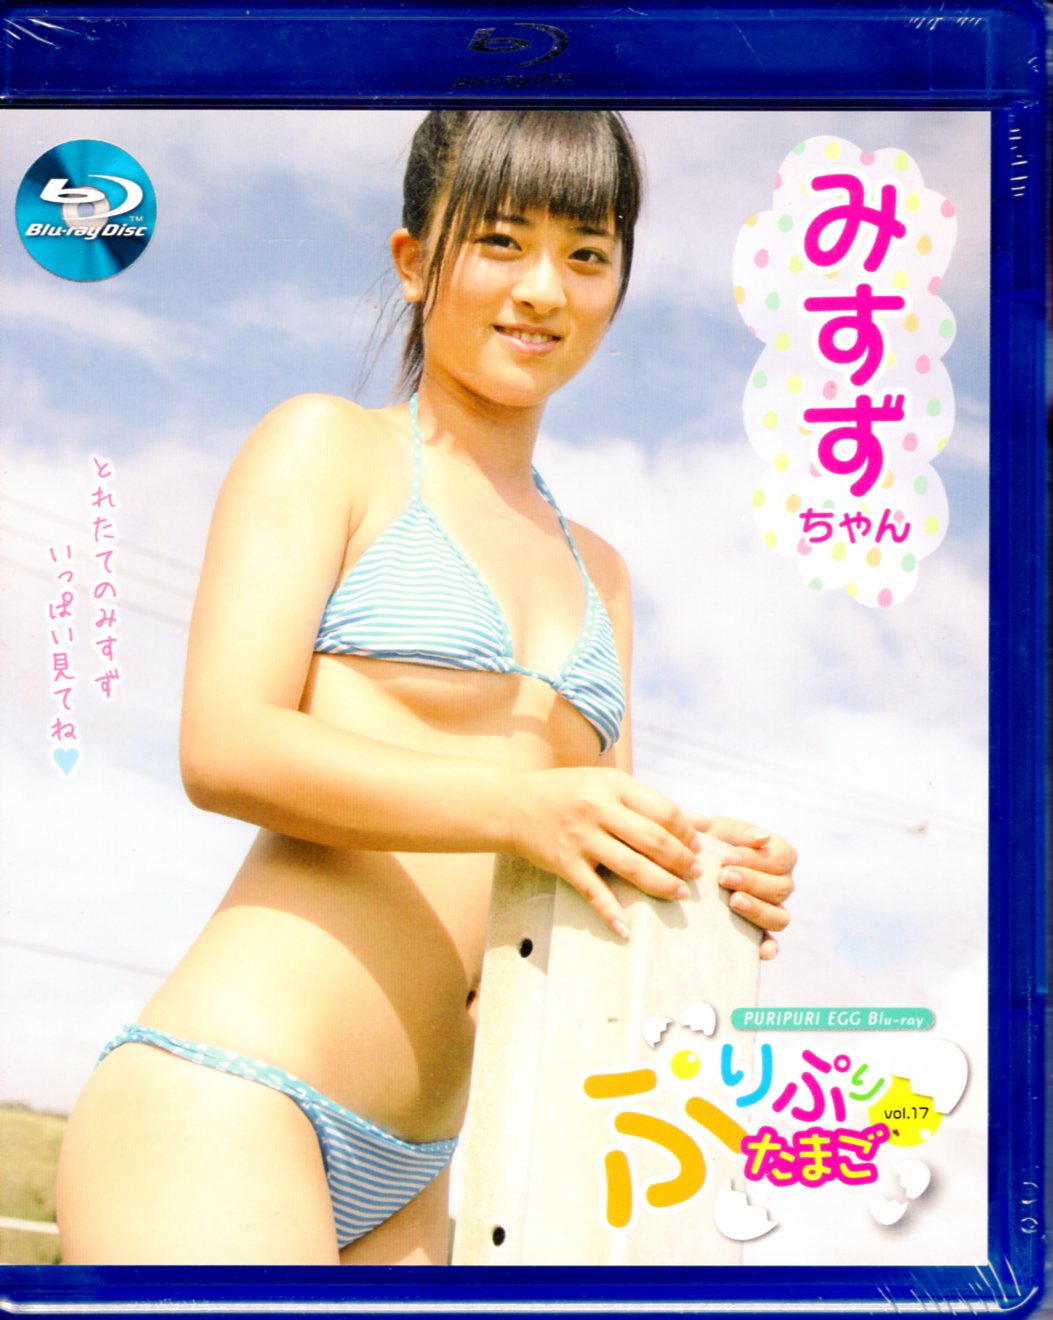 ☆廃盤 DVD『ぷりぷりたまご vol.51 みすずちゃん』☆ - DVD